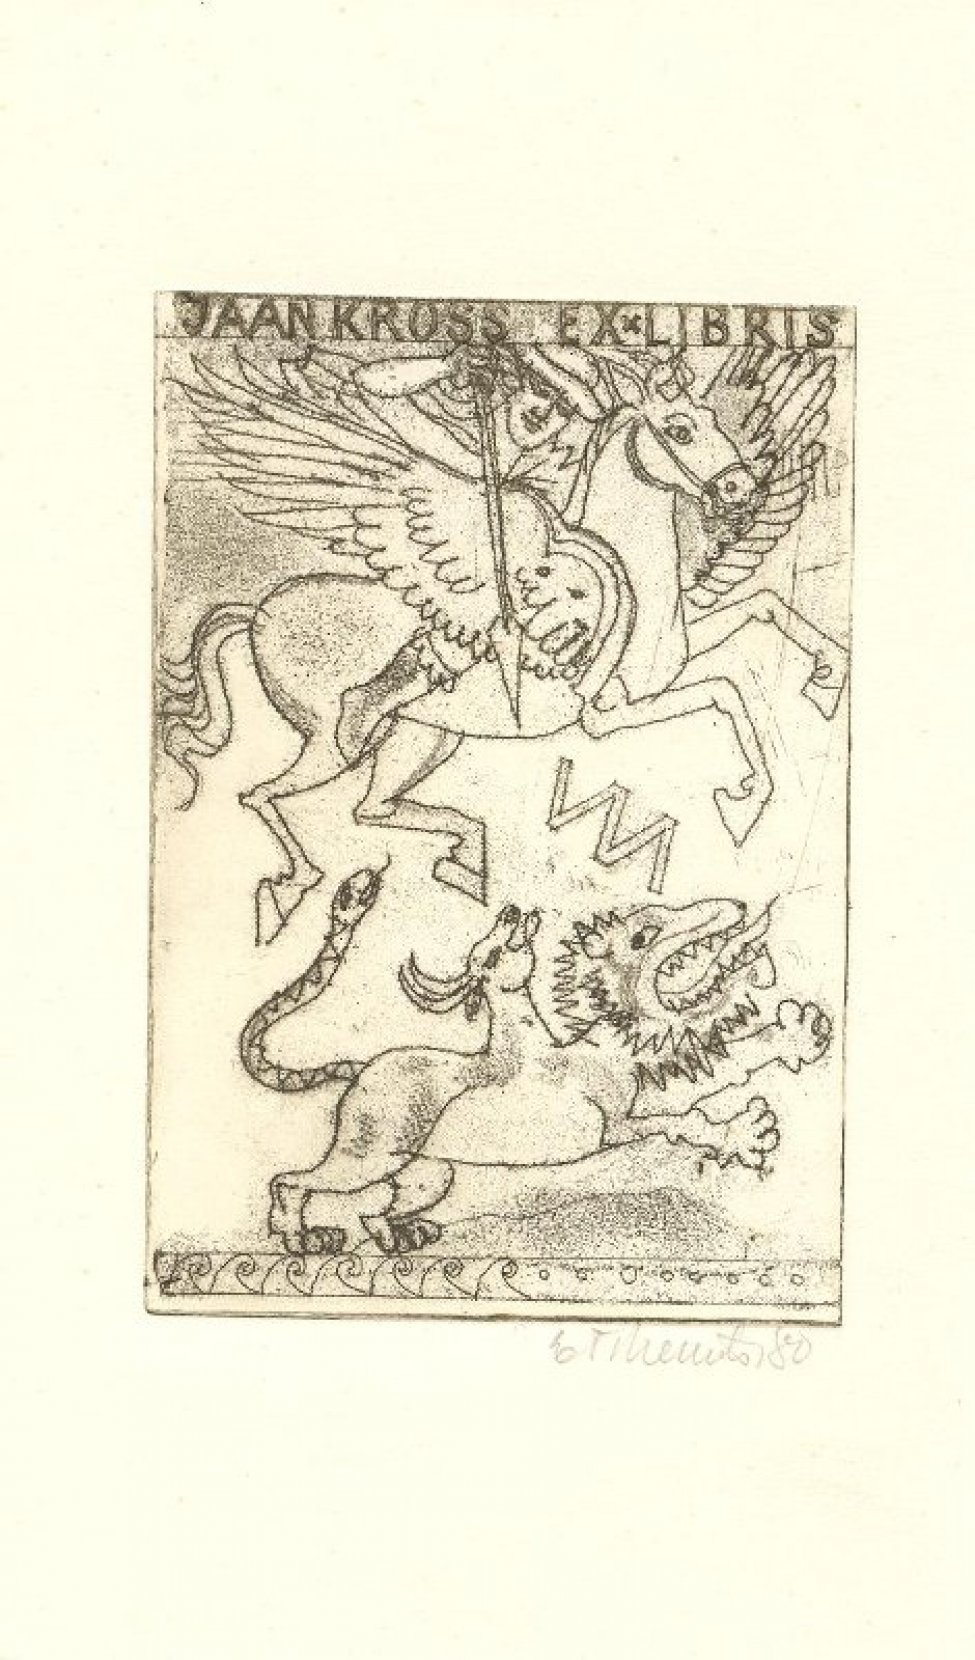 Изображен Персей на крылатом коне, поражающий трехголовое чудовище.